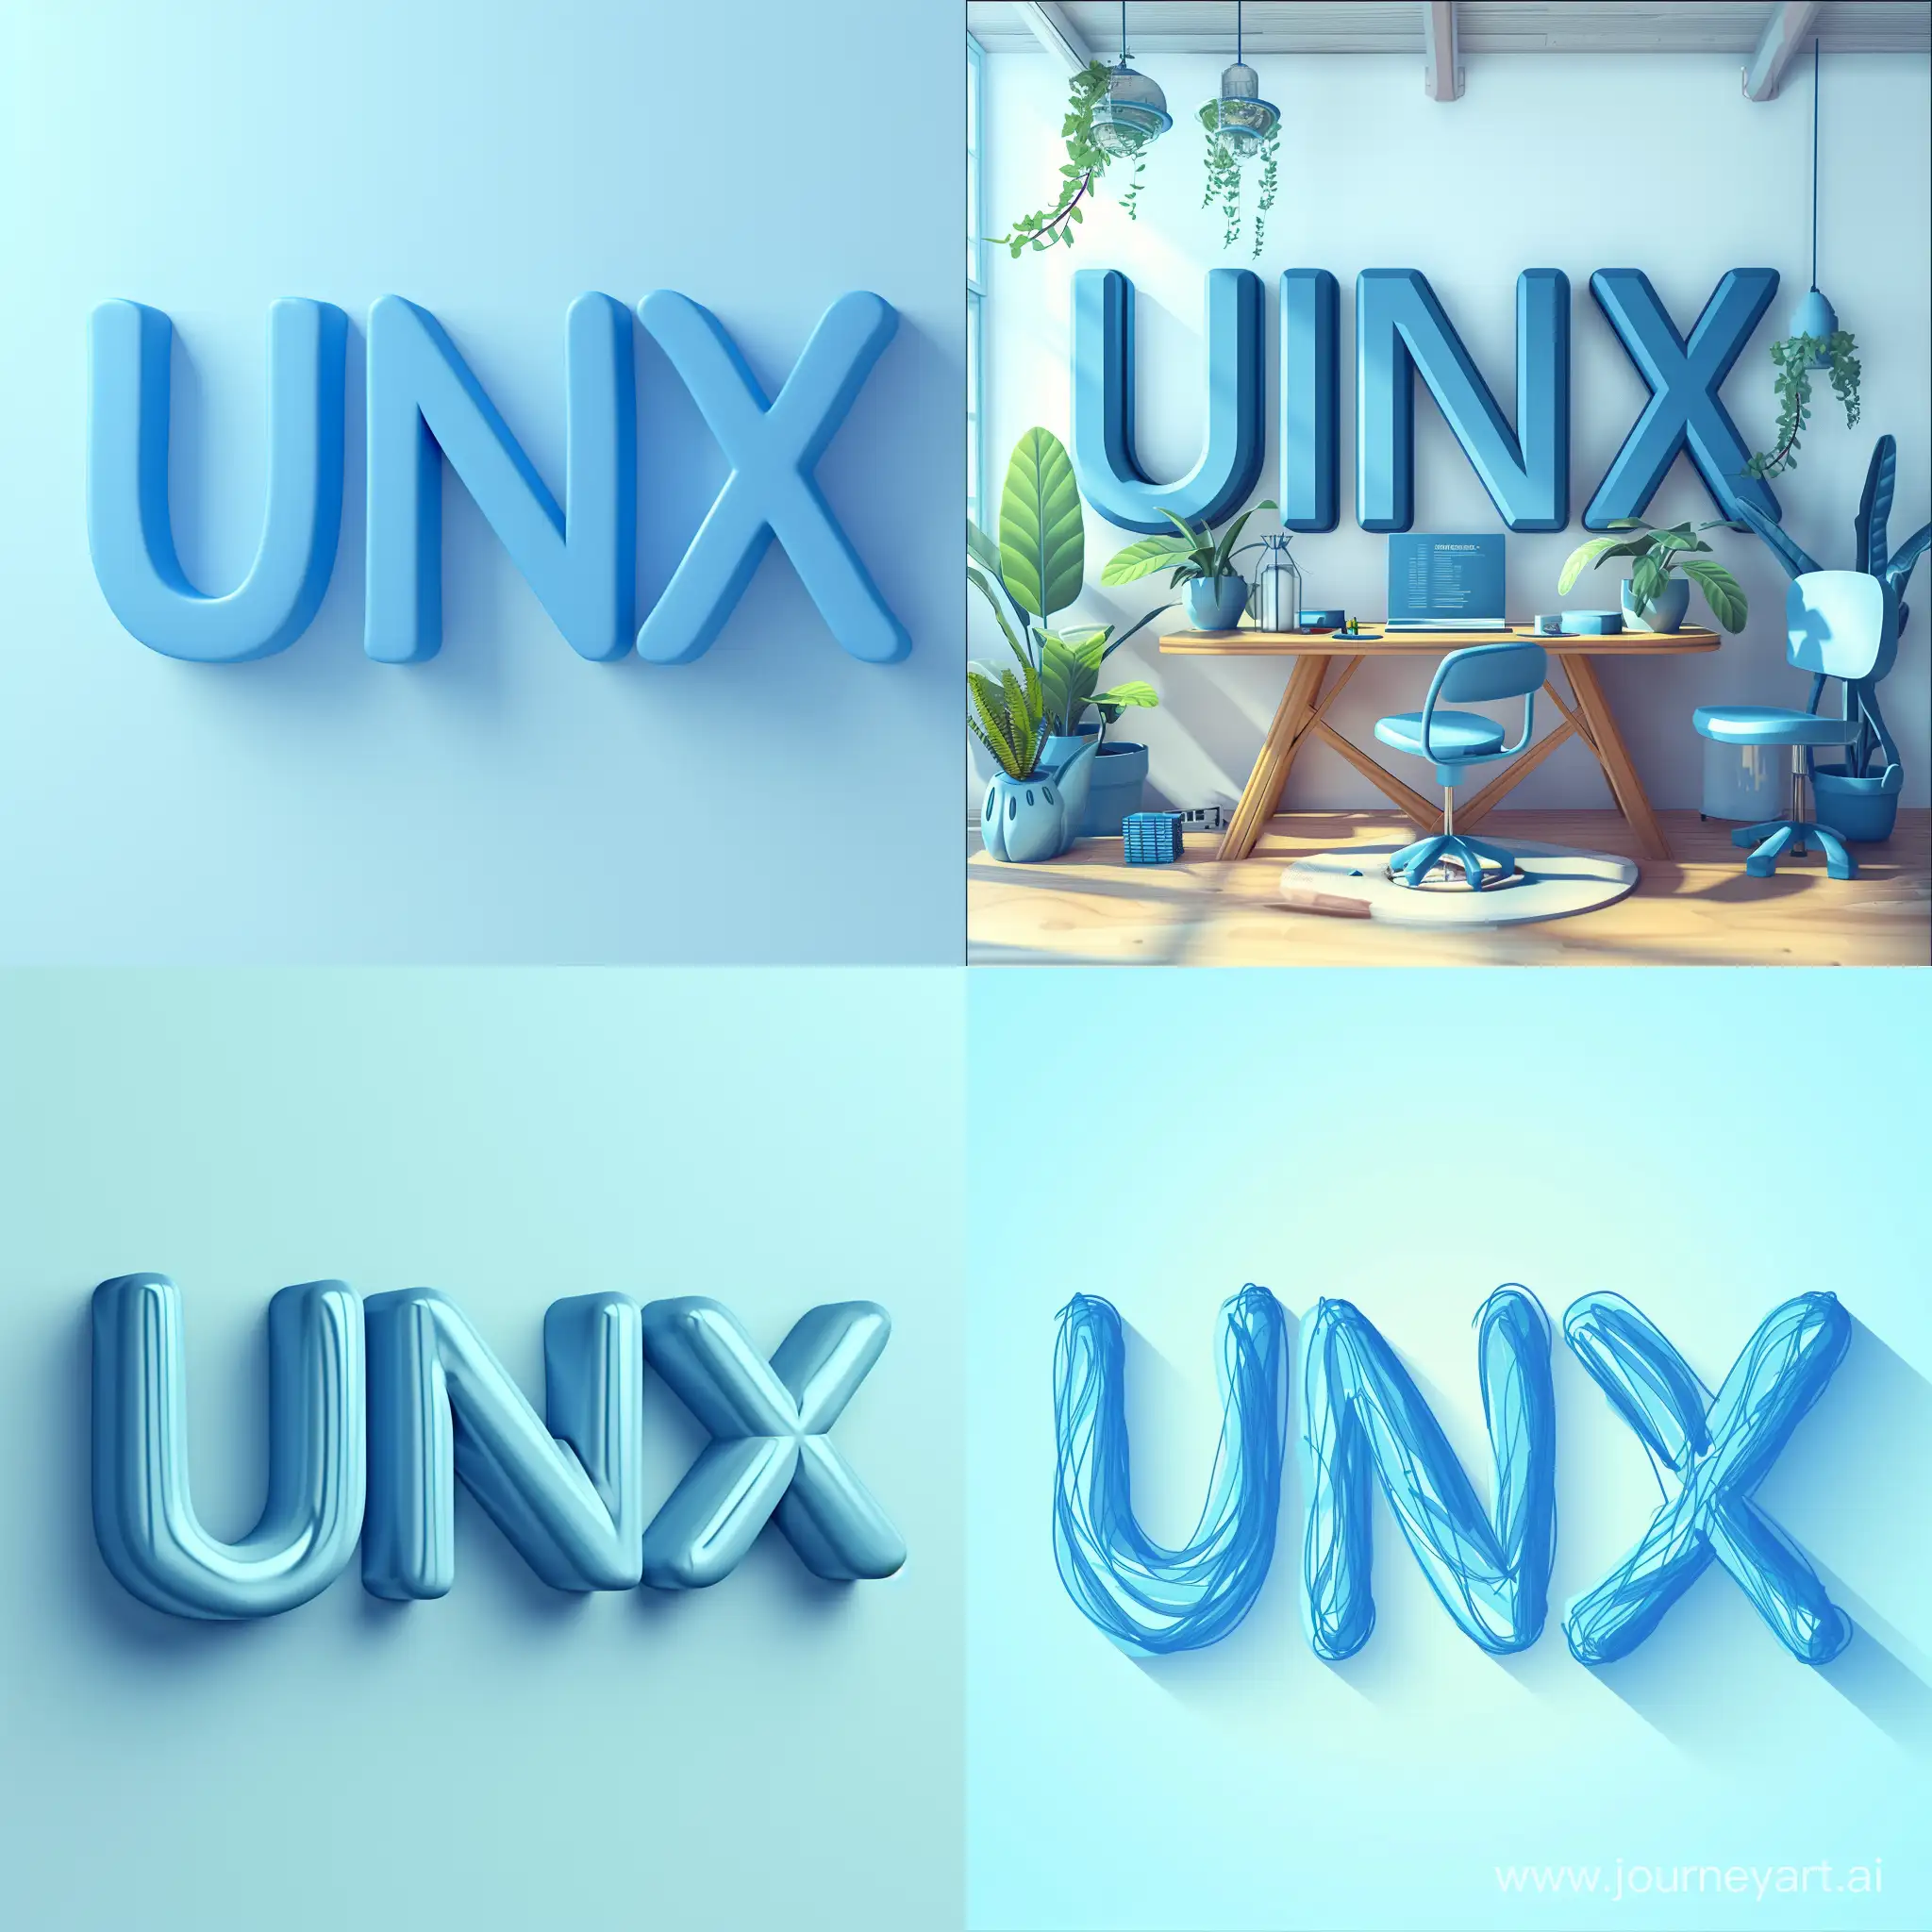 Идеально подойдет светлый минималистичный веб-баннер в теплых синих тонах для вас! Нарисуйте баннер с надписью 'UNIX', использовав гармоничные светлые оттенки синего цвета. Вдохновитесь знаменитым минимализмом UNIX, создав простой и стильный дизайн, который выразит его элегантность и узнаваемость. Удачи в создании!